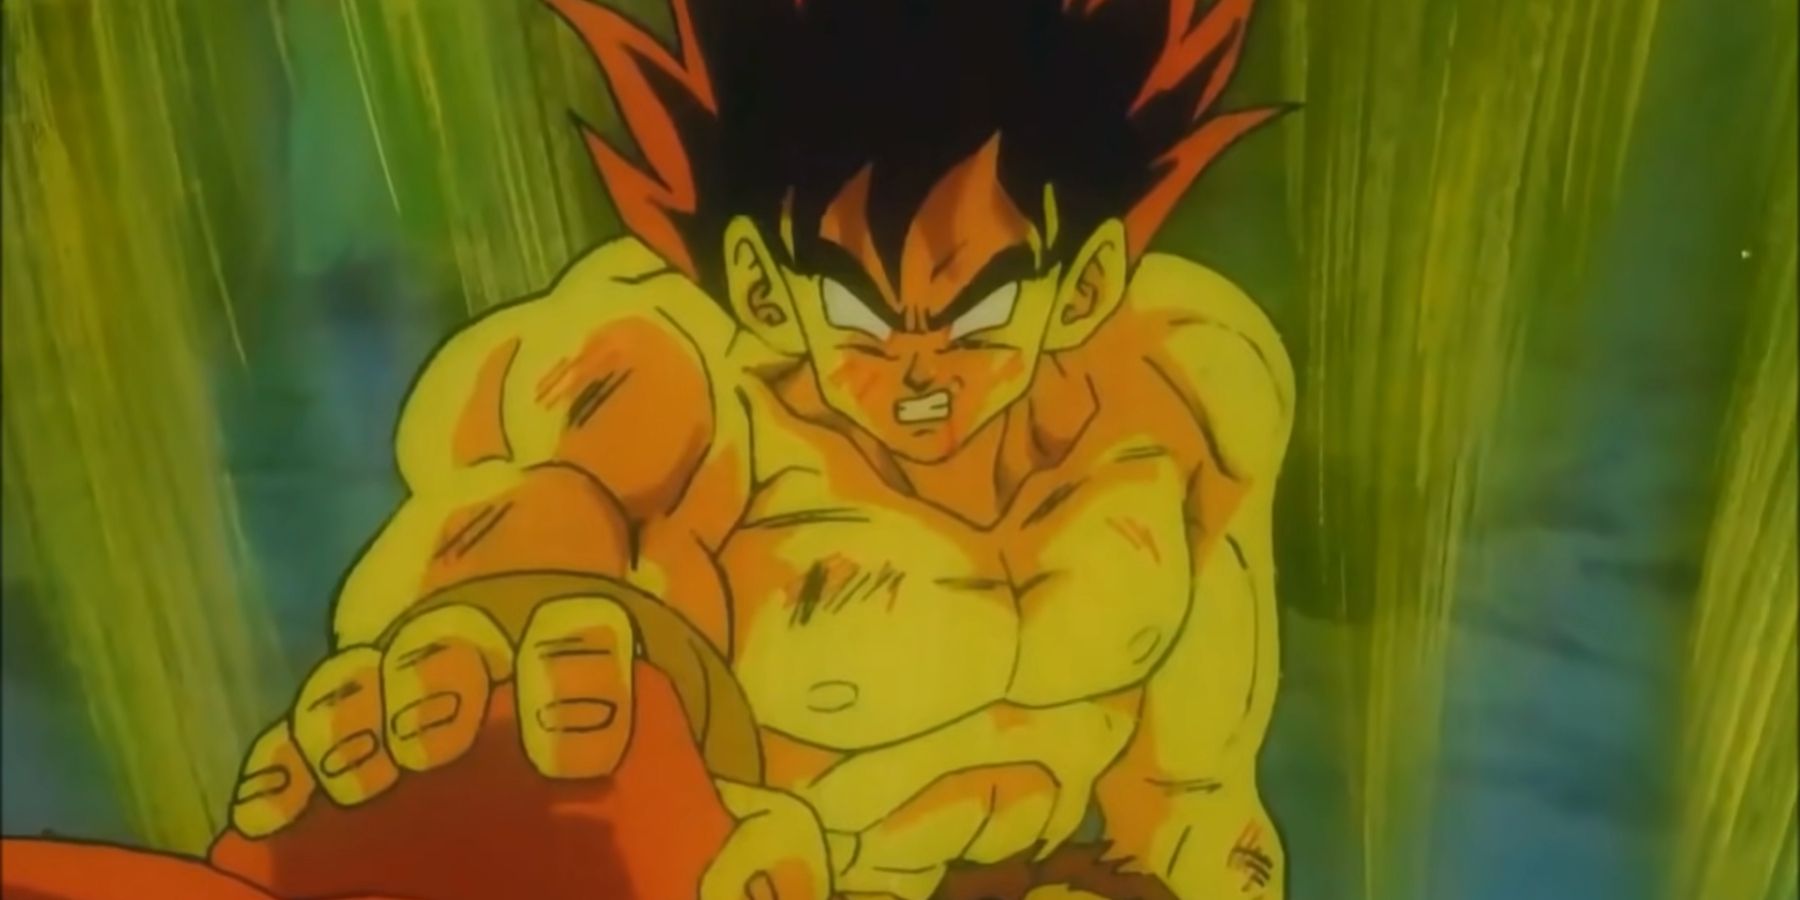 Goku catching Lord Slug's fist while in False Super Saiyan form in Dragon Ball Z Lord Slug